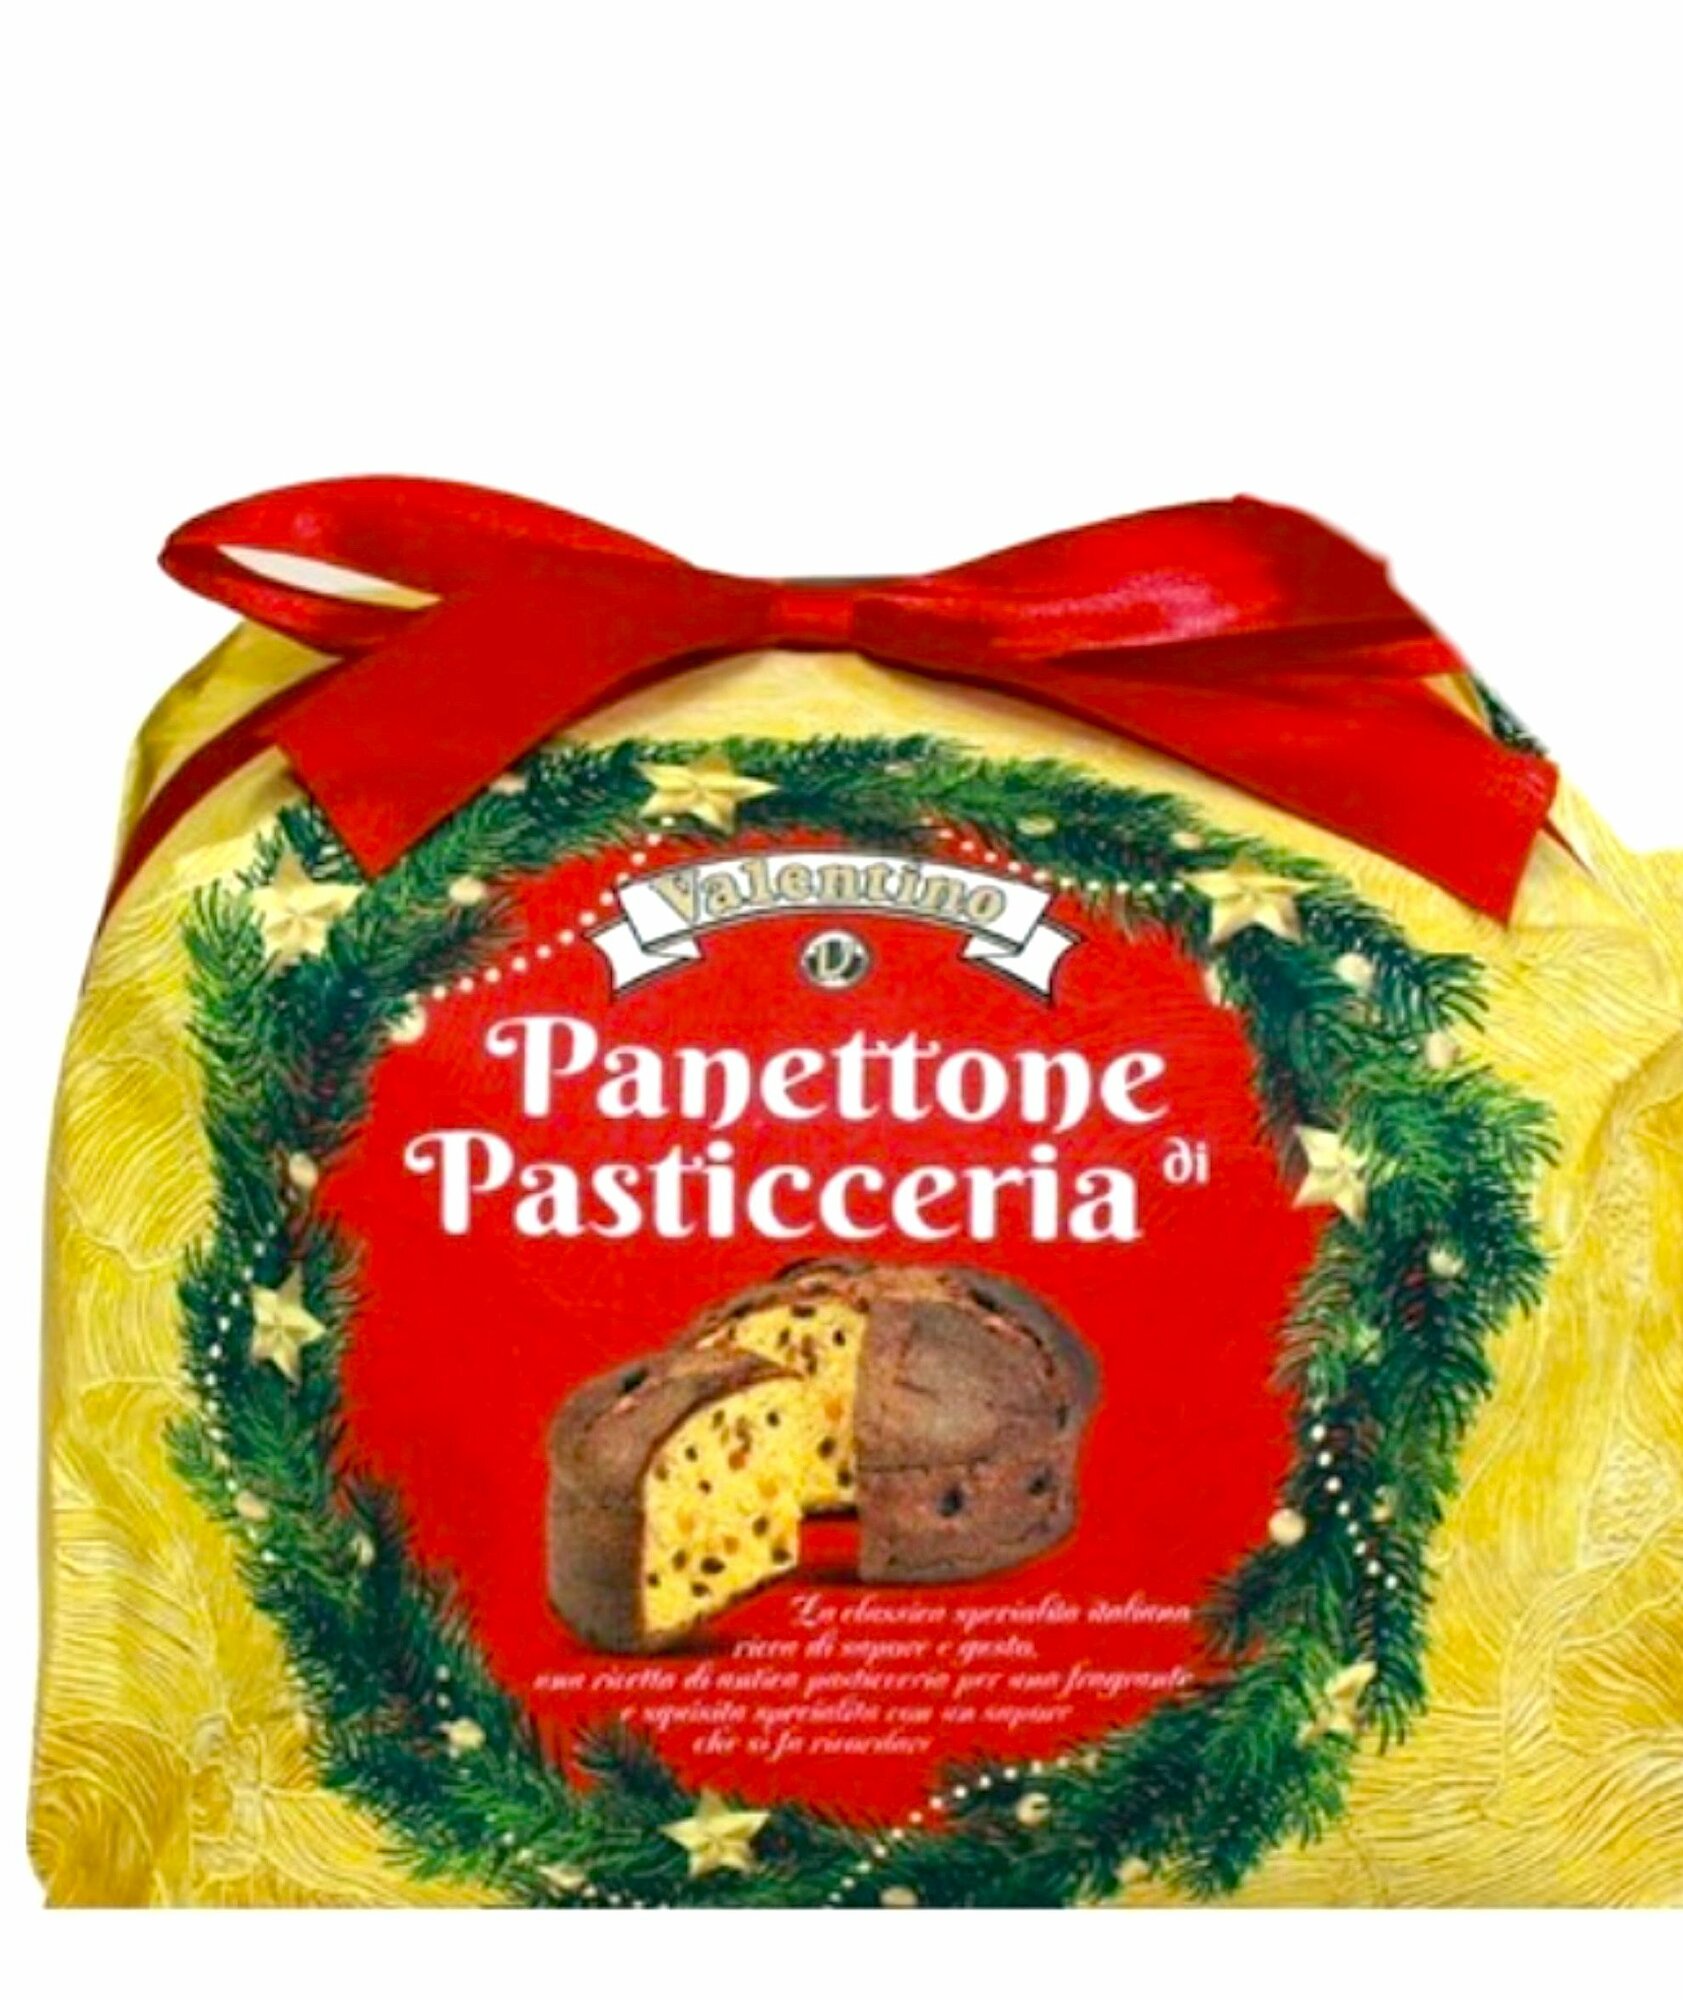 Valentino Panettone Итальянский кекс (пасхальный/ новогодний кулич) с изюмом и цукатами, желтый 1кг